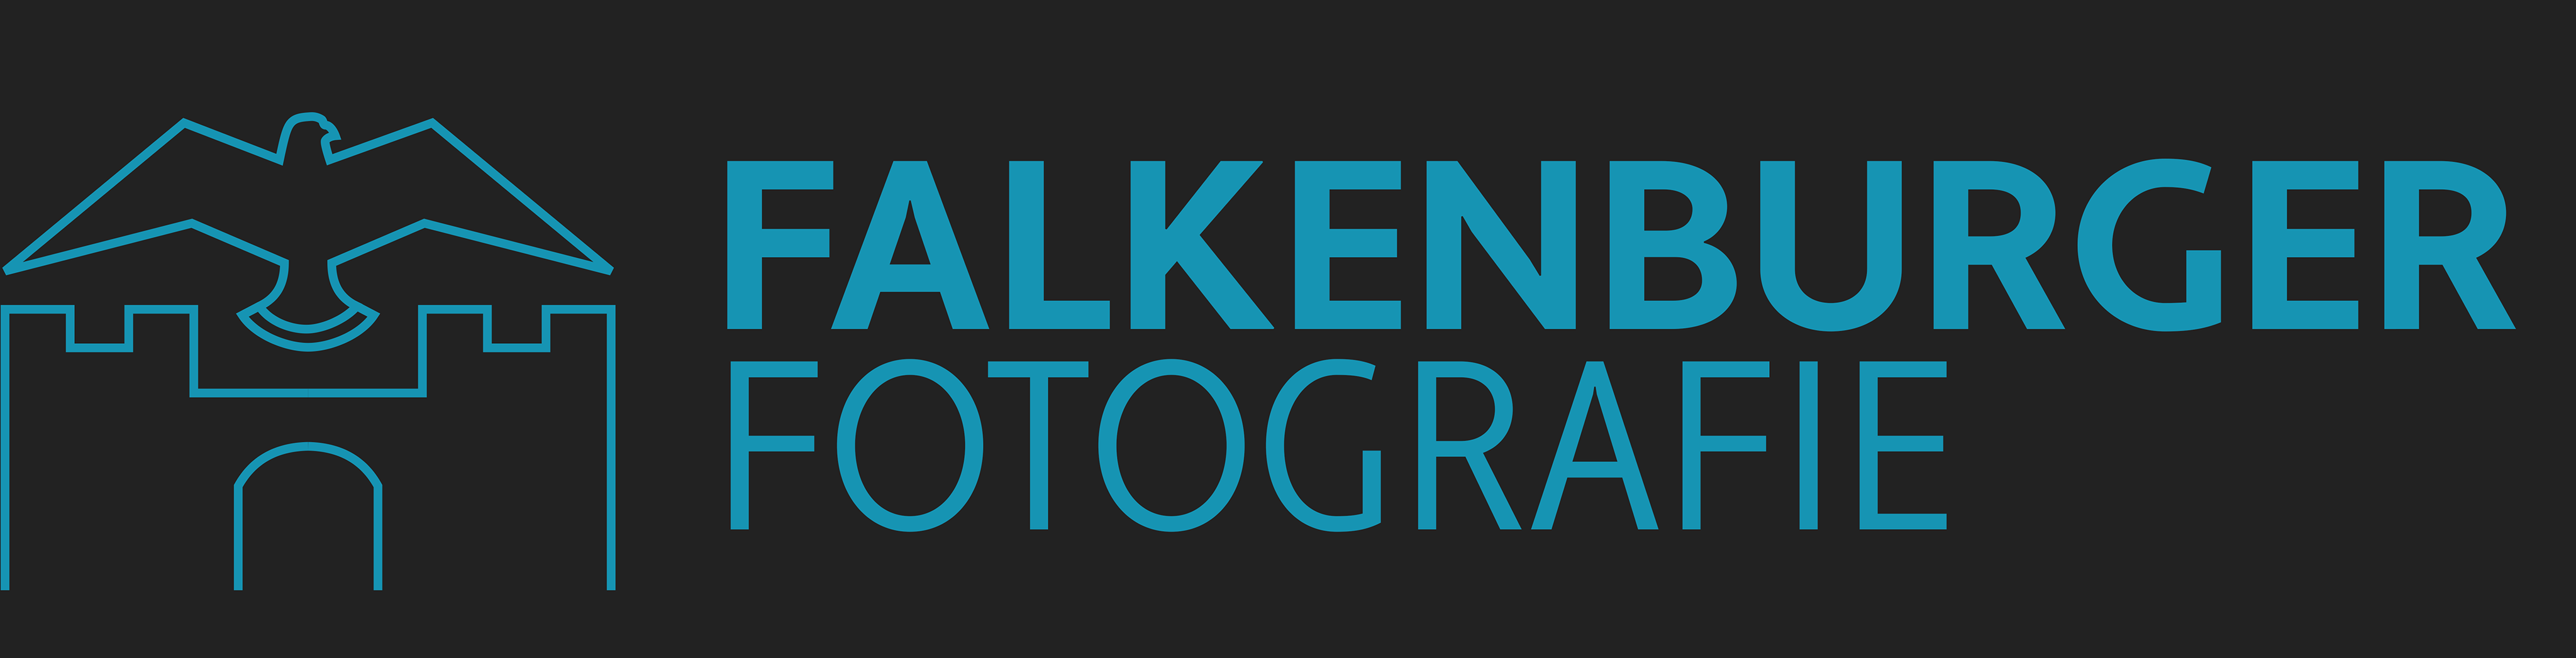 FalkenburgerFotografie_Logo